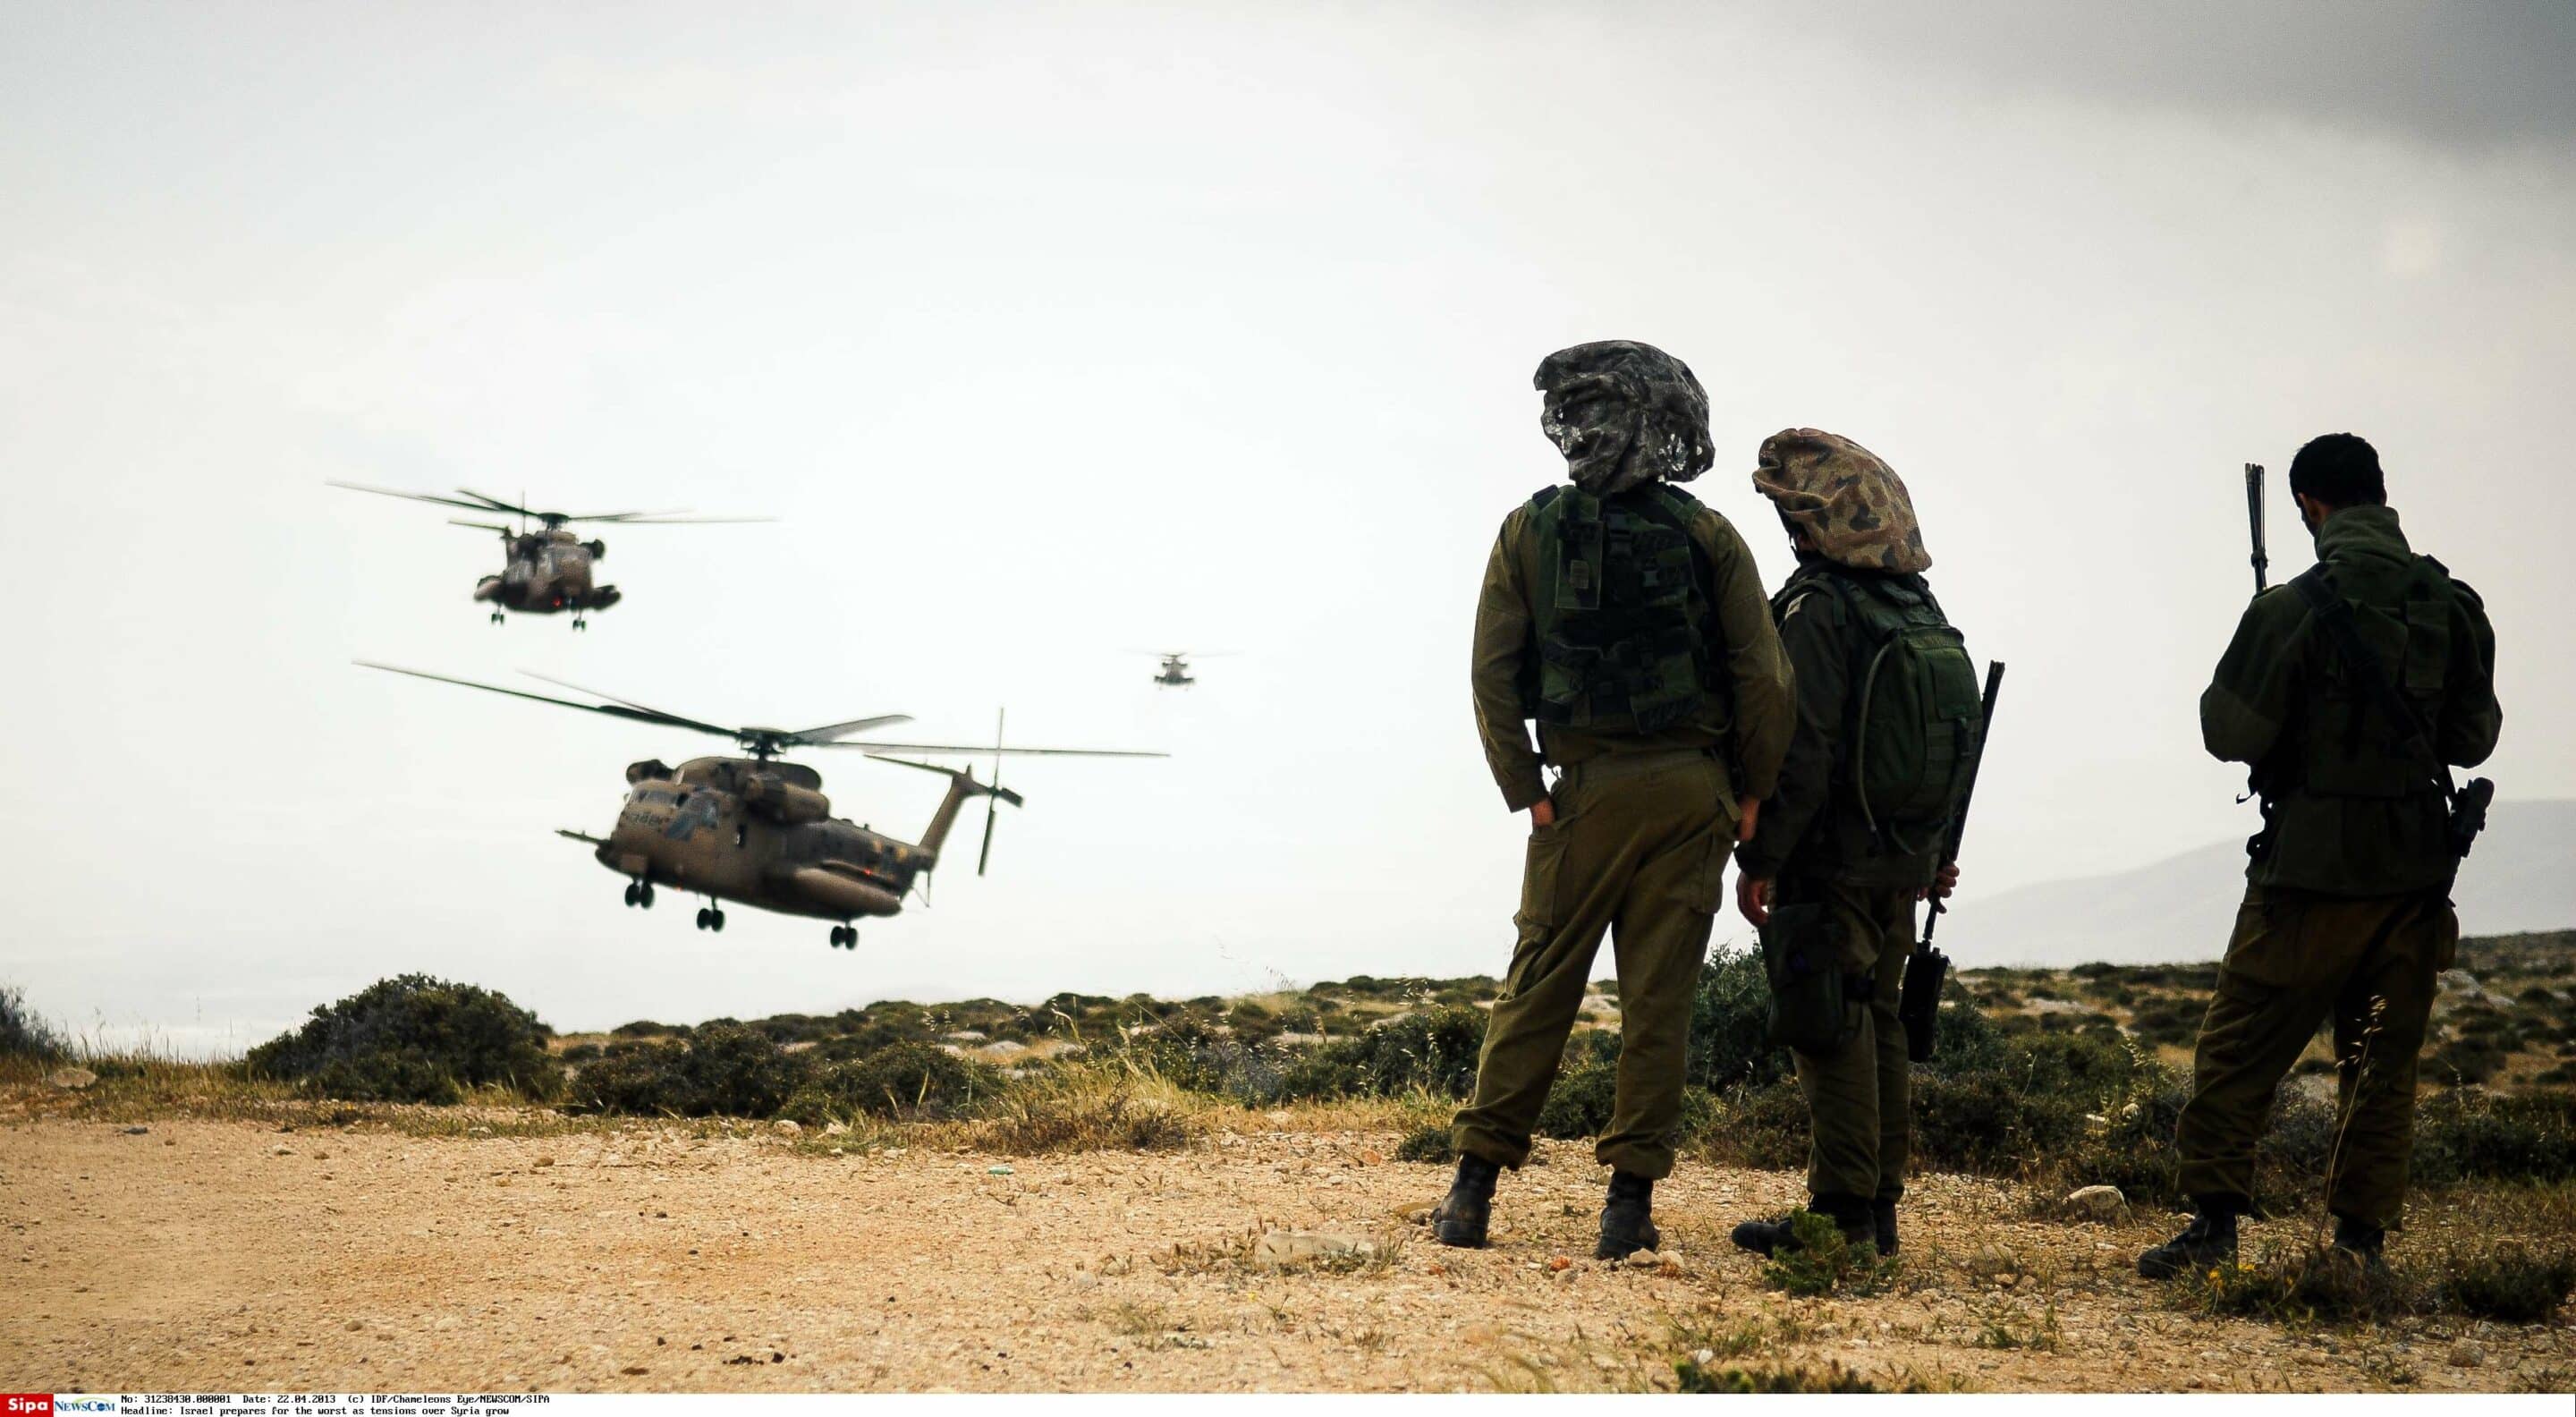 PRIL 22 : Exercice conjoint de sauvetage aérien entre la Brigade Givati et l'Armée de l'air israélienne. Photo par IDF/Chameleons Eye Photo via Newscom/cewitness021893/1305270822